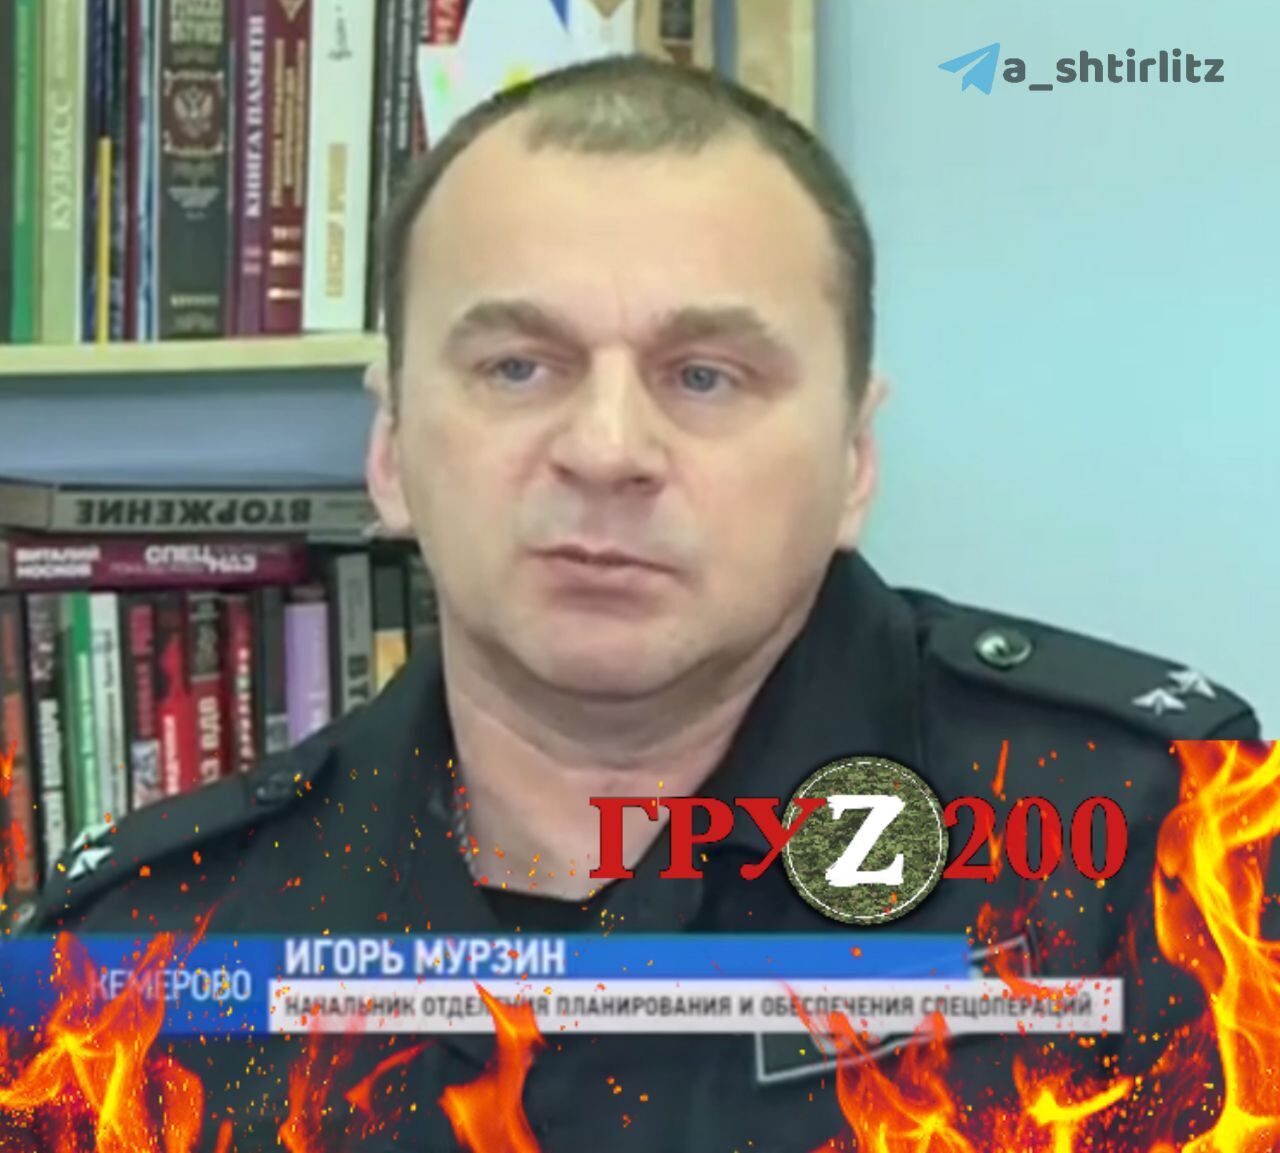 Окупанта Ігоря Мурзіна було ліквідовано на другий день вторгнення армії РФ в Україну